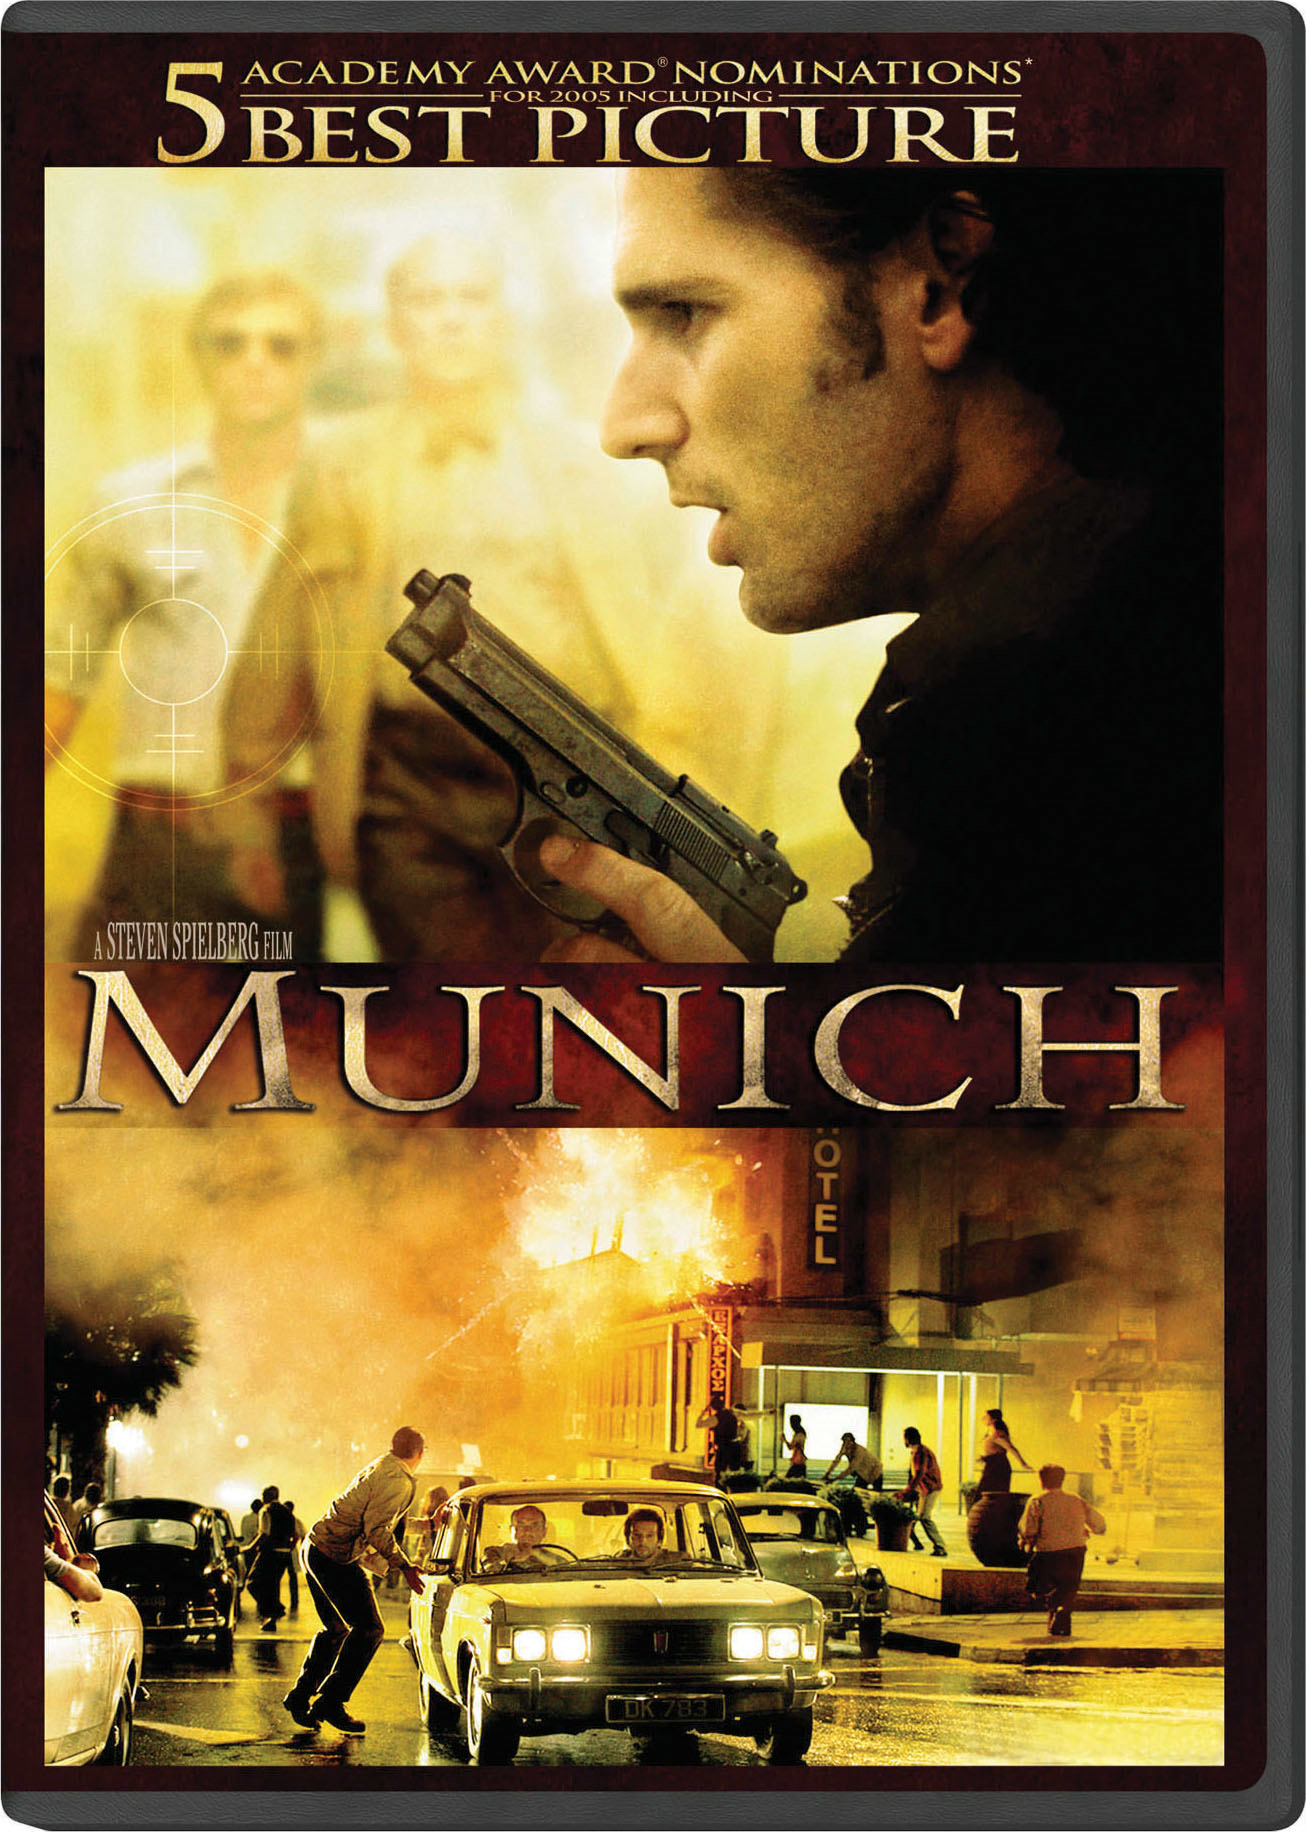 Munich (DVD Widescreen) - DVD [ 2005 ]  - Thriller Movies On DVD - Movies On GRUV